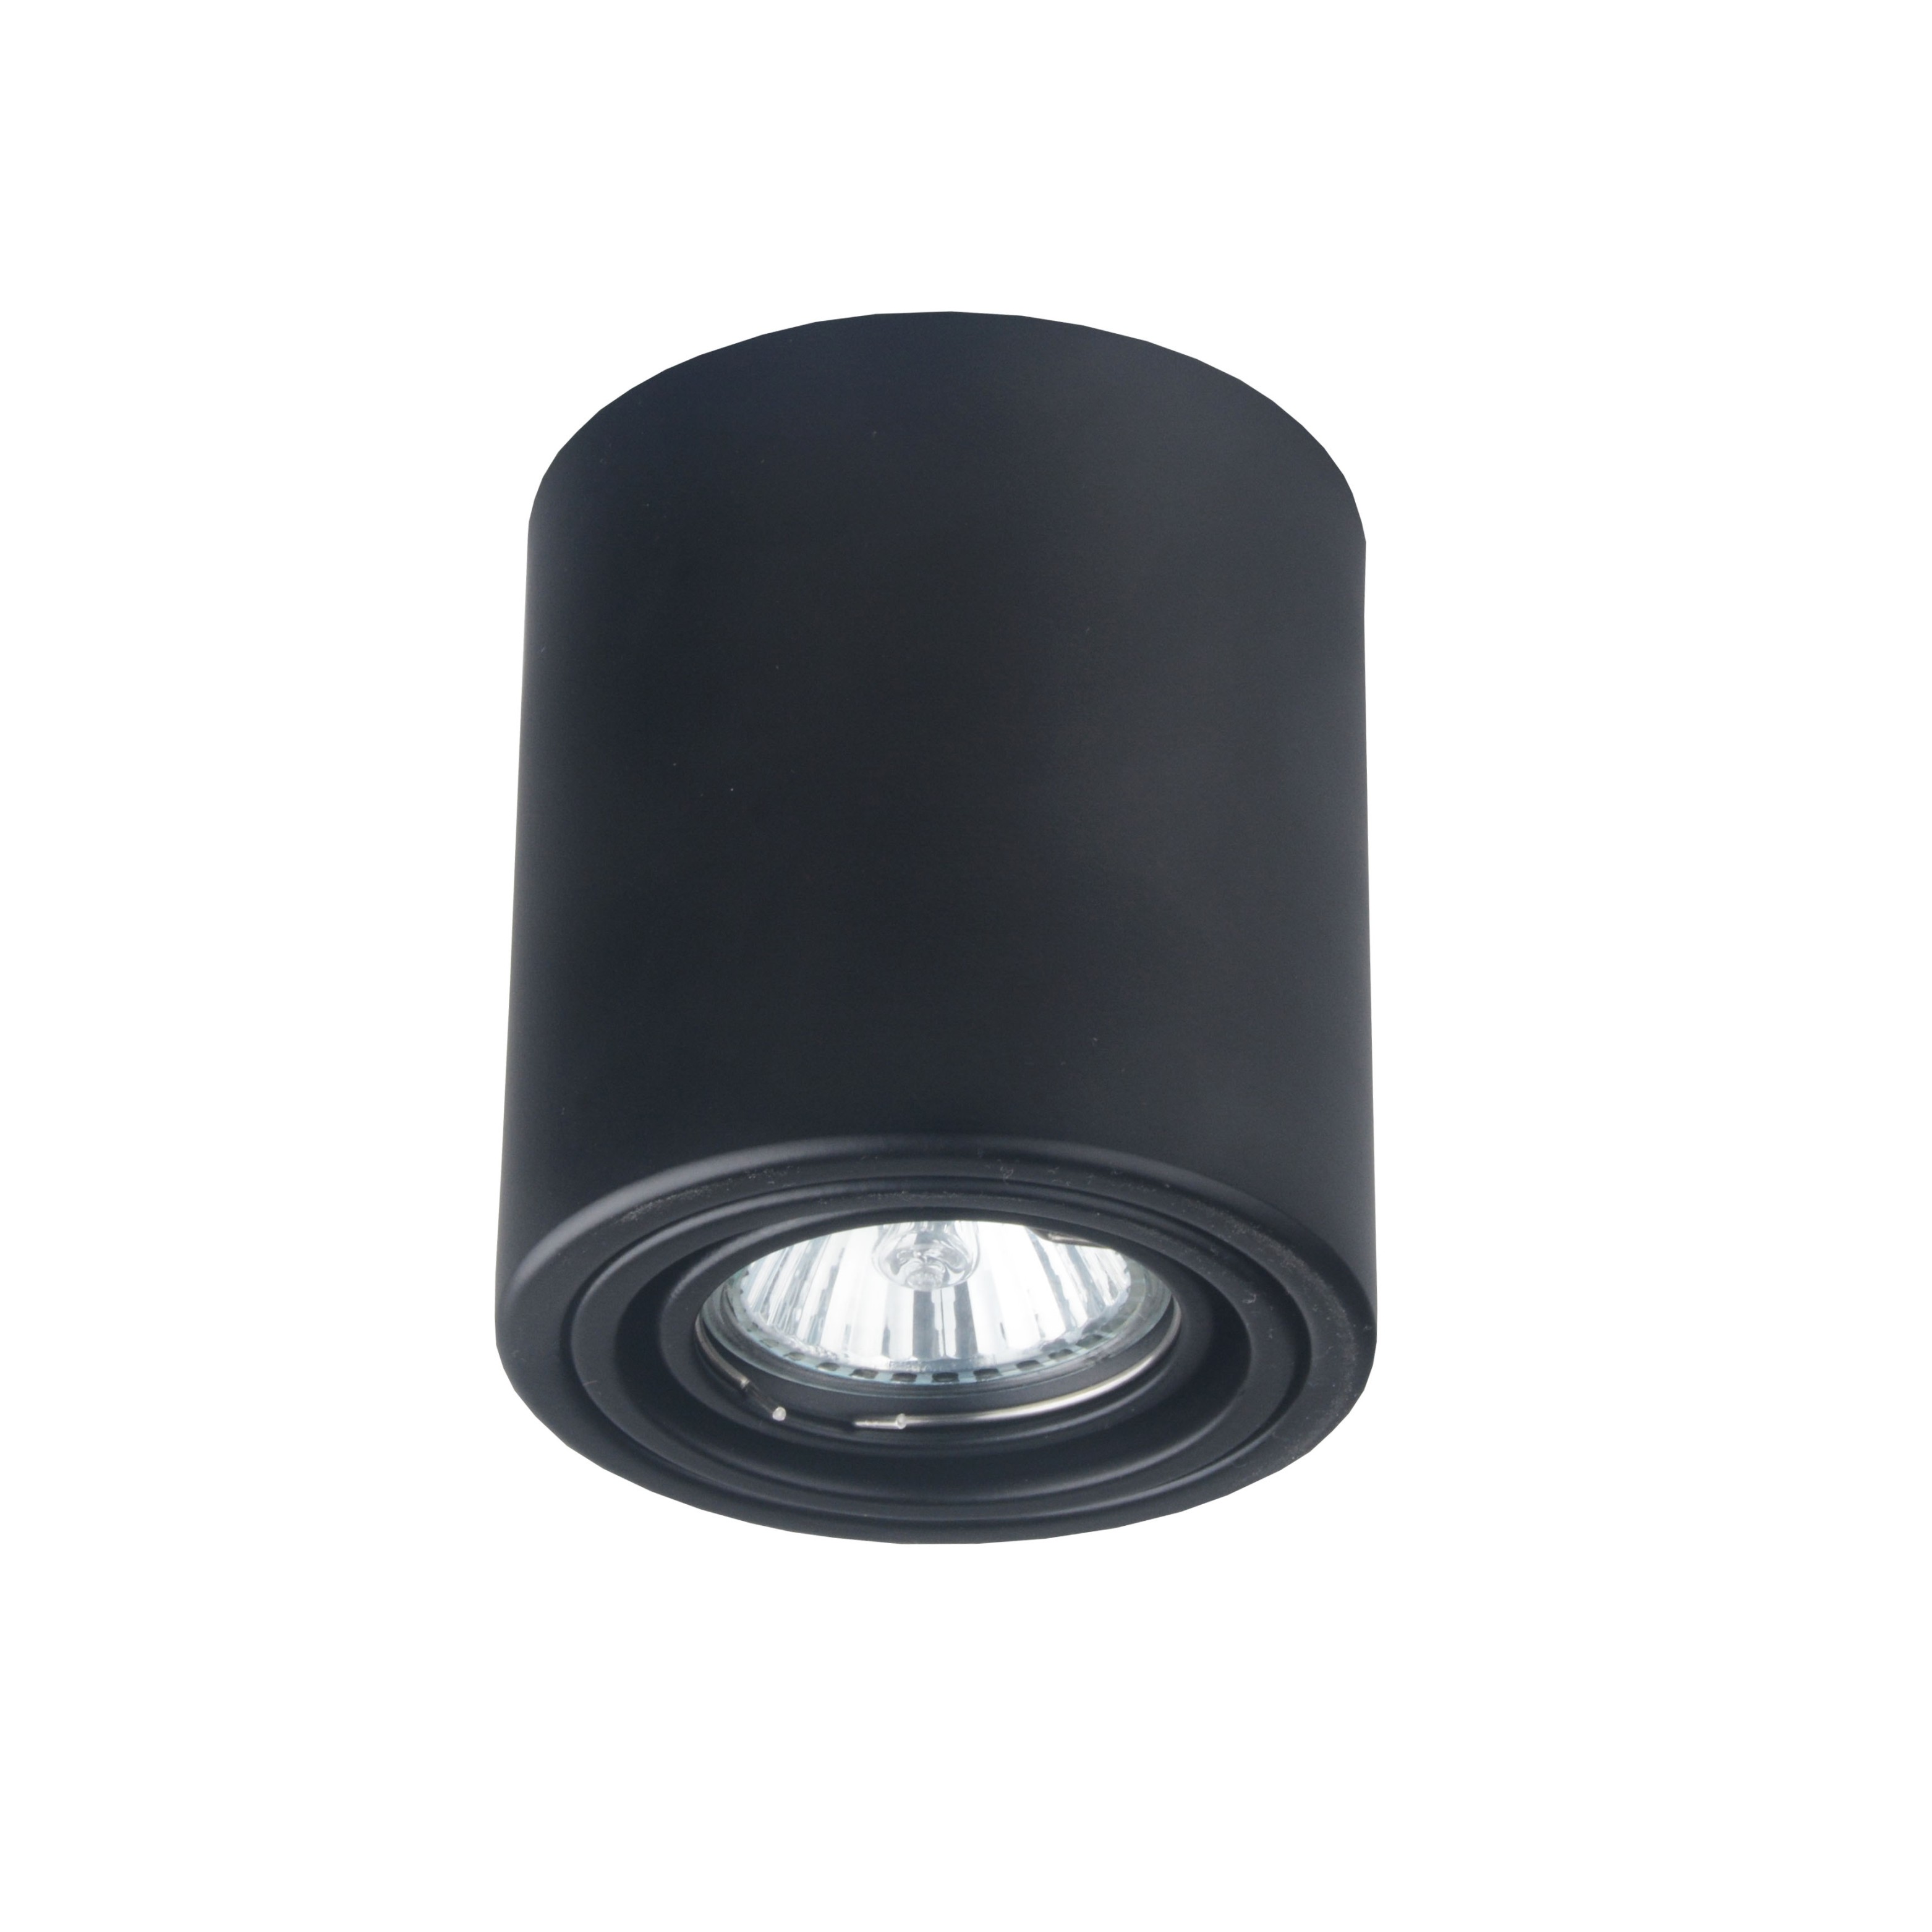 Großhandel GU10 MR16 LED Einstellbare veränderbare Oberfläche Runde Leuchte Gehäuse Gehäuse Rampenlicht Decke Downlight